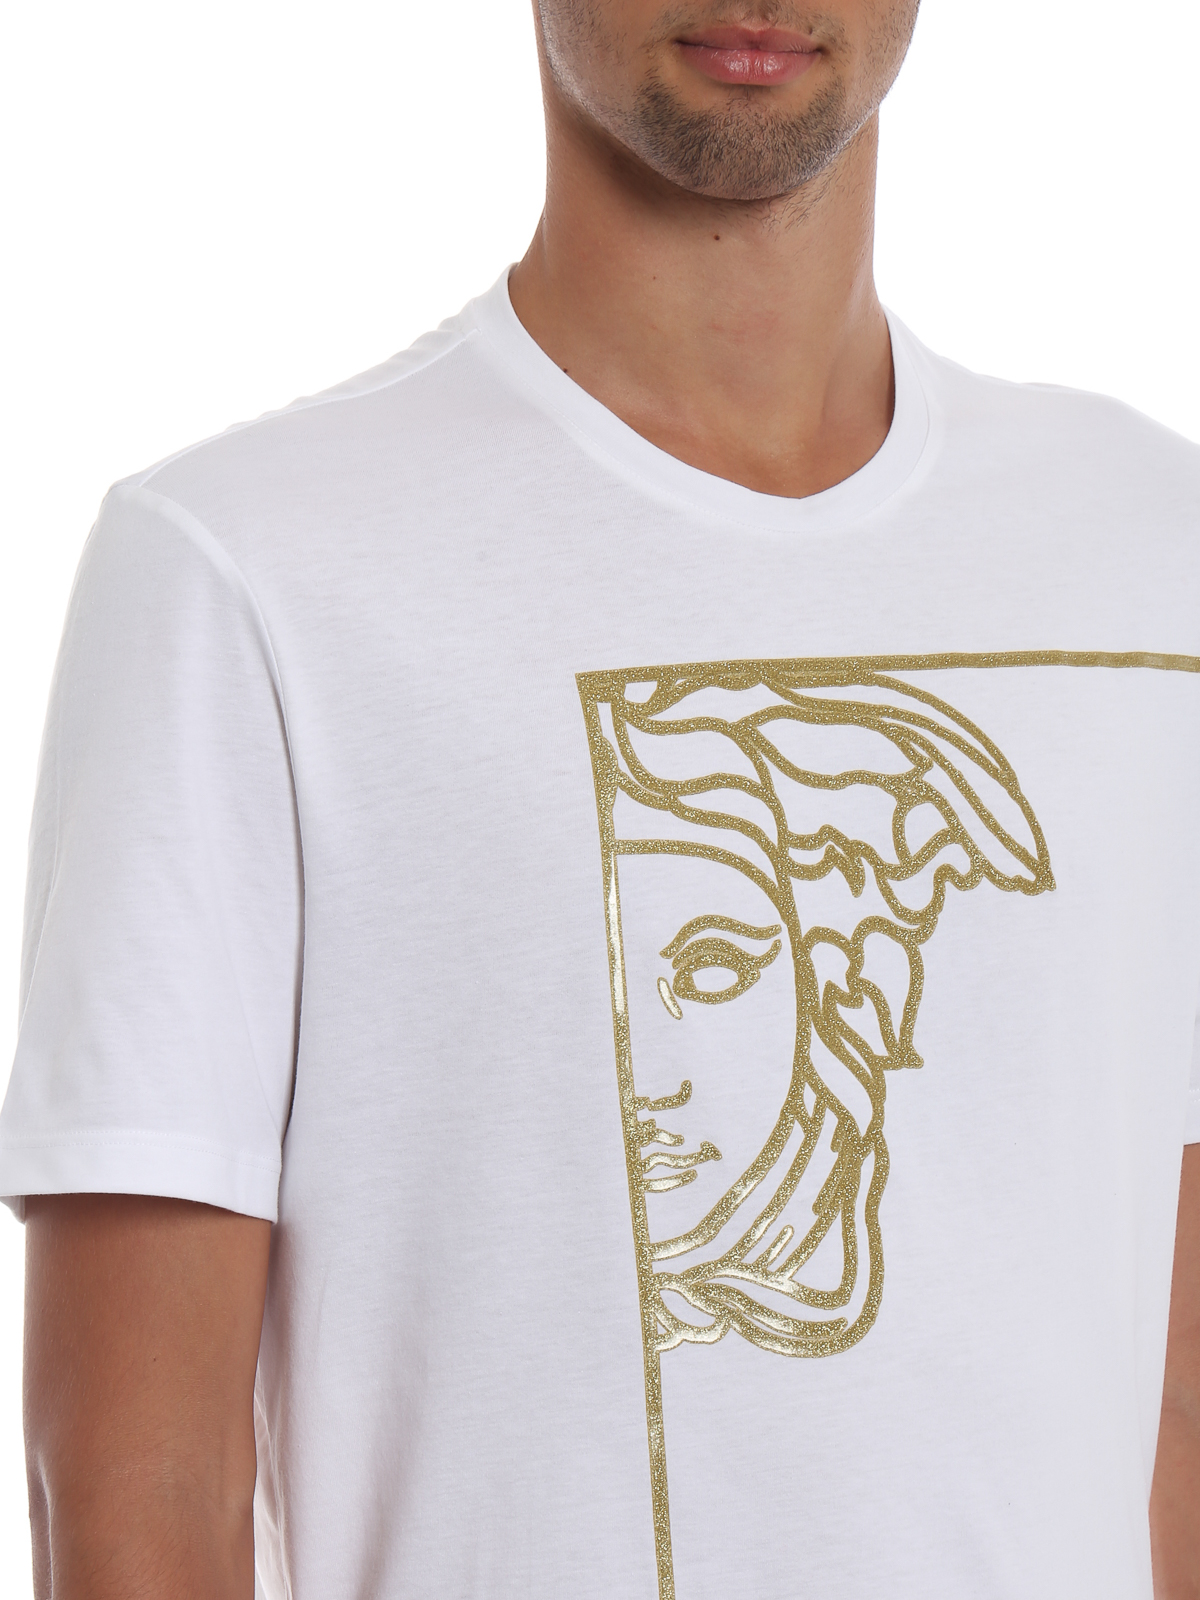 T Shirt Versace Medusa Top Sellers, 54% OFF | edetaria.com